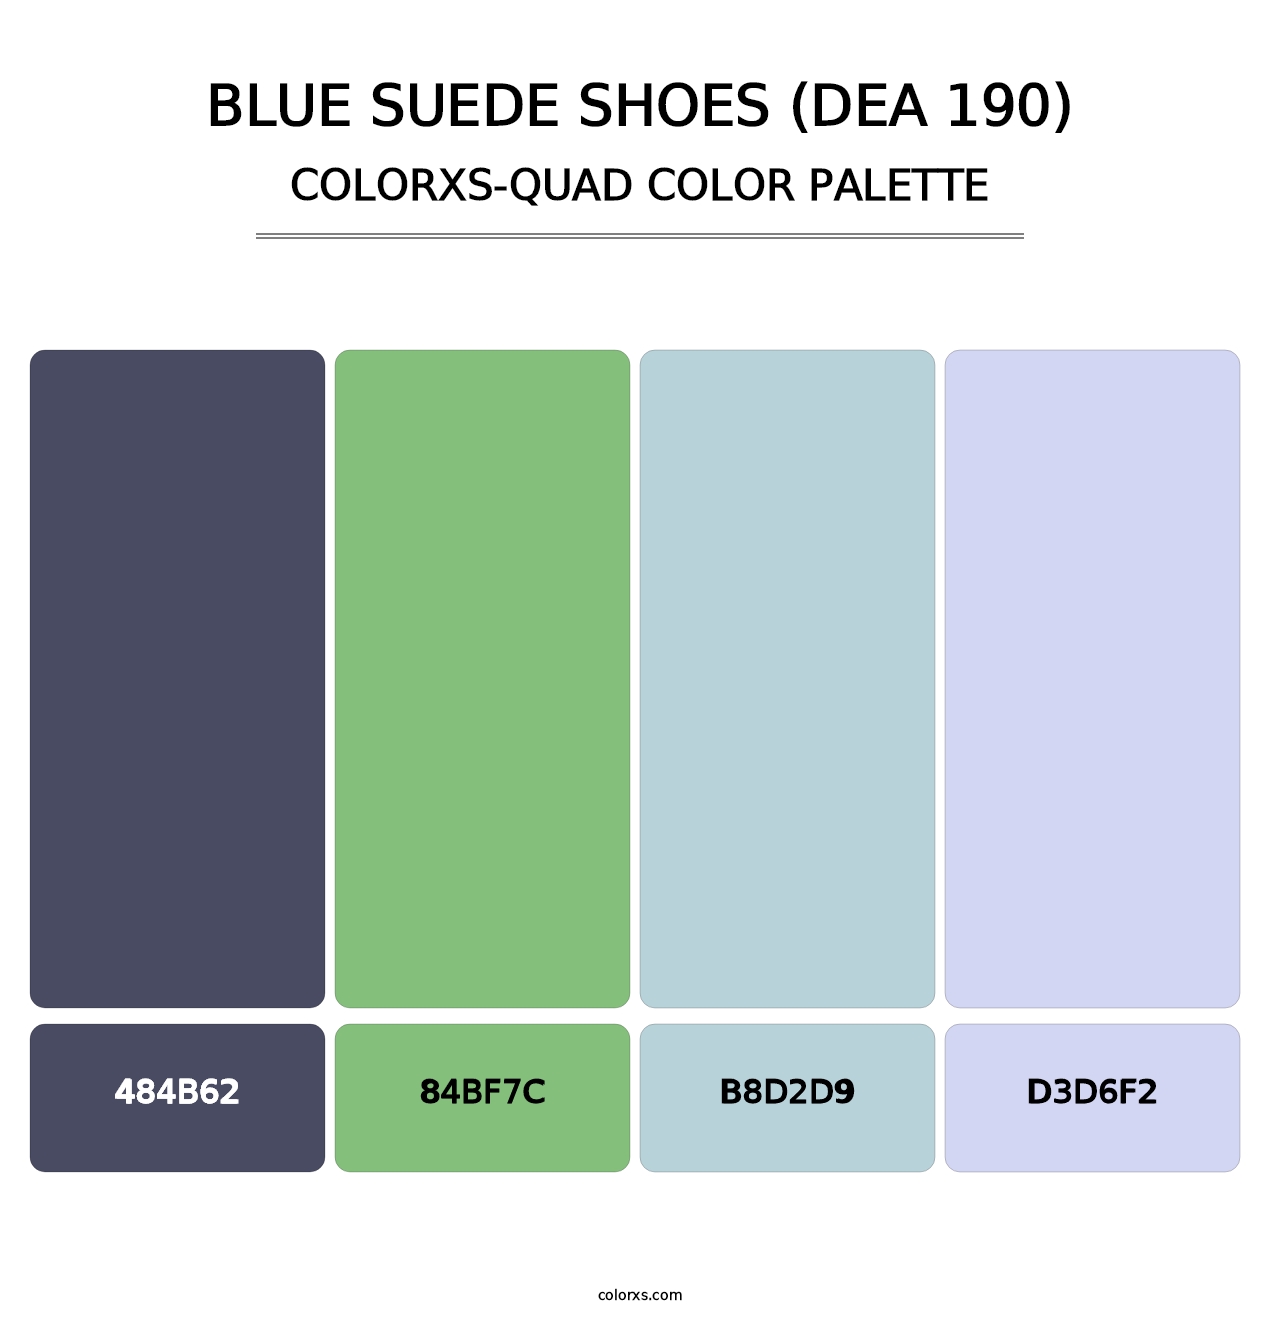 Blue Suede Shoes (DEA 190) - Colorxs Quad Palette